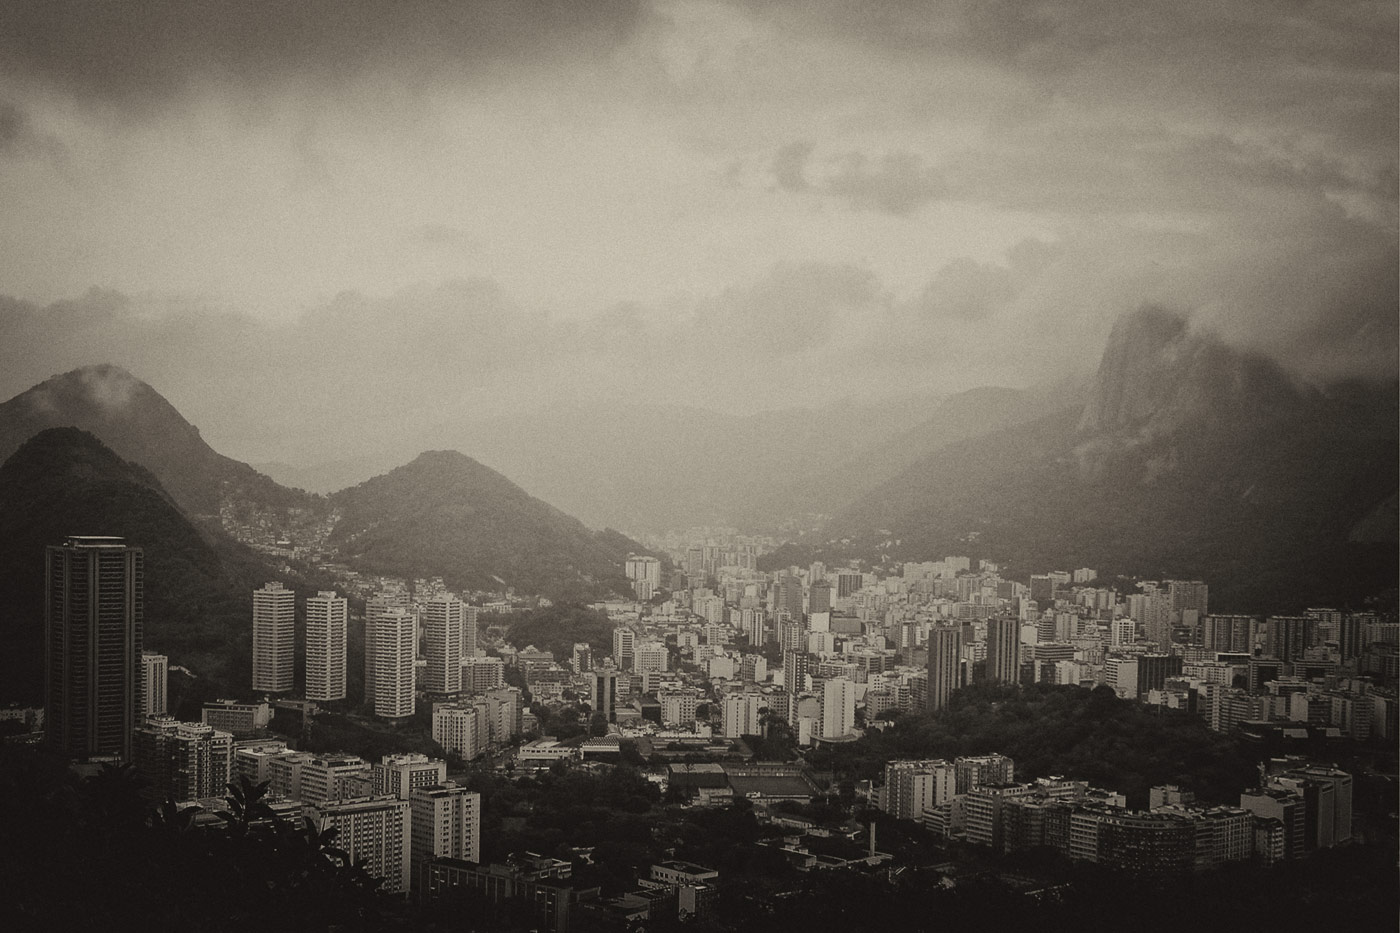 Rio de Janeiro seen from Favela Rocinha, 2004